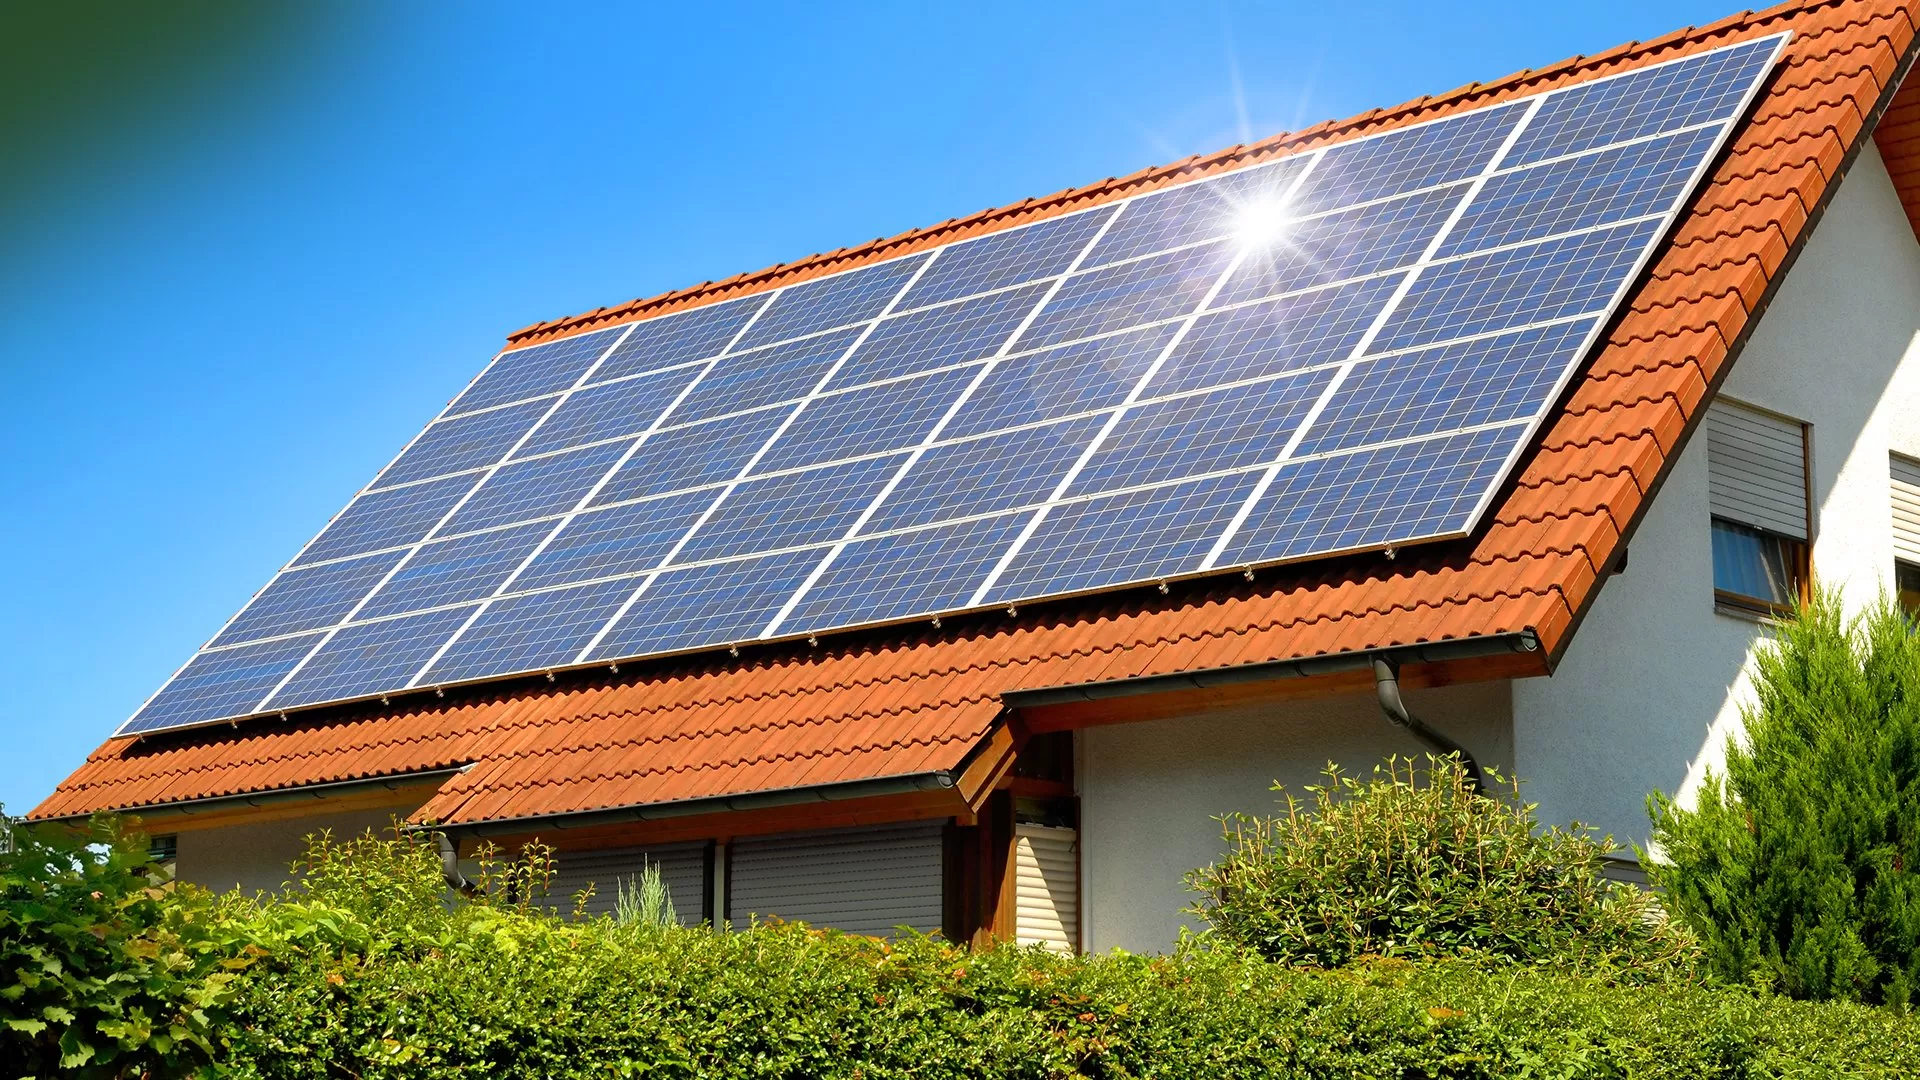 Přemýšlíte o tom, jak ušetřit za energie? Fotovoltaická elektrárna (FVE) je jasná volba!